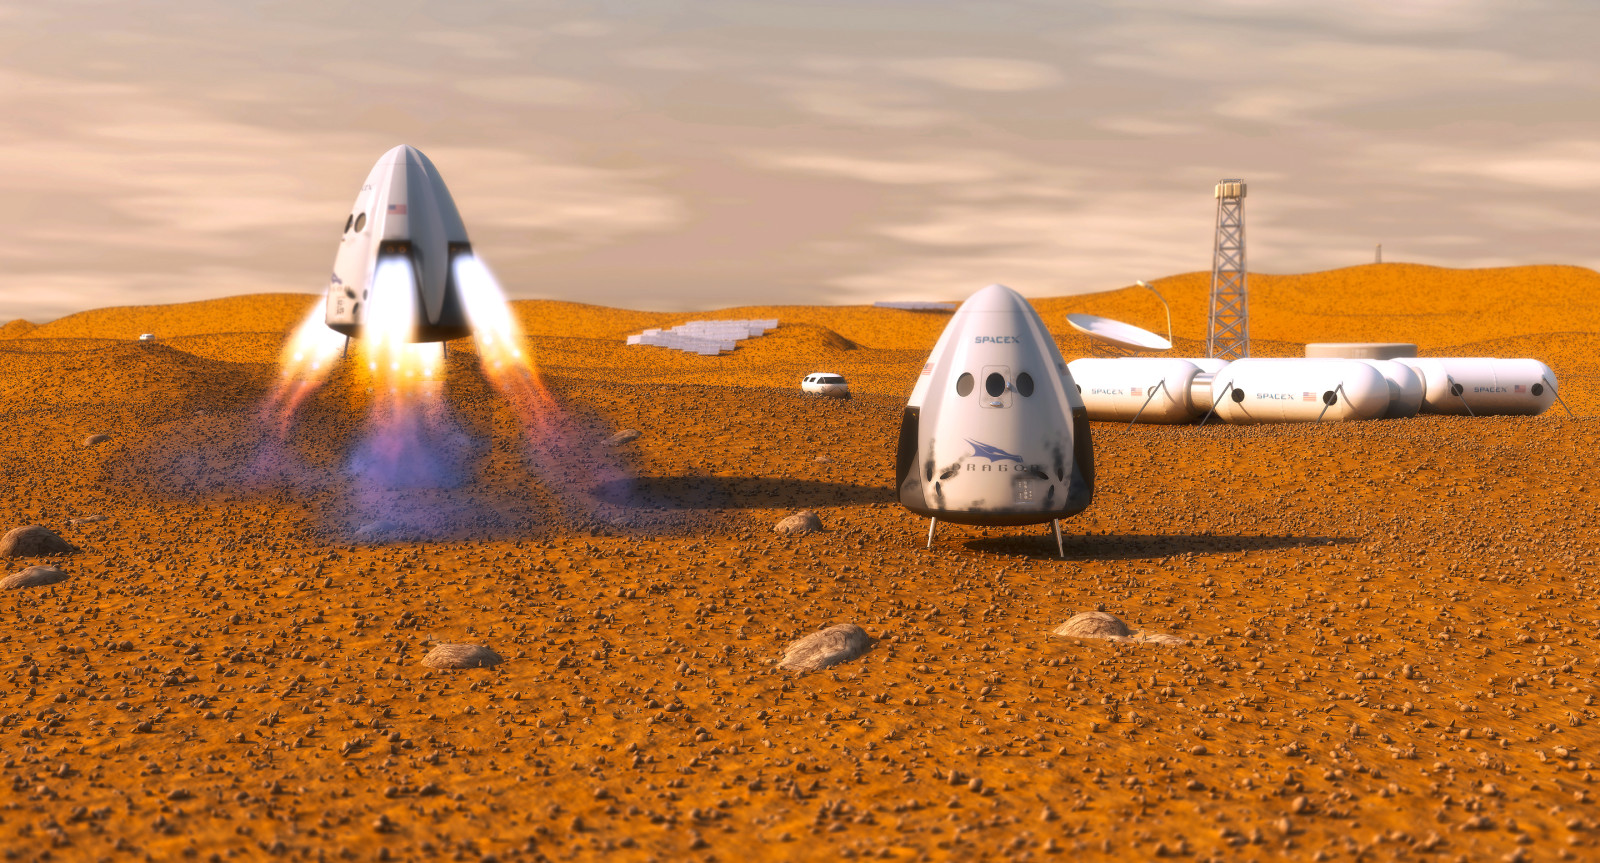 ยานอวกาศ, ดาวอังคาร, เอกชน, Dragon SpaceX